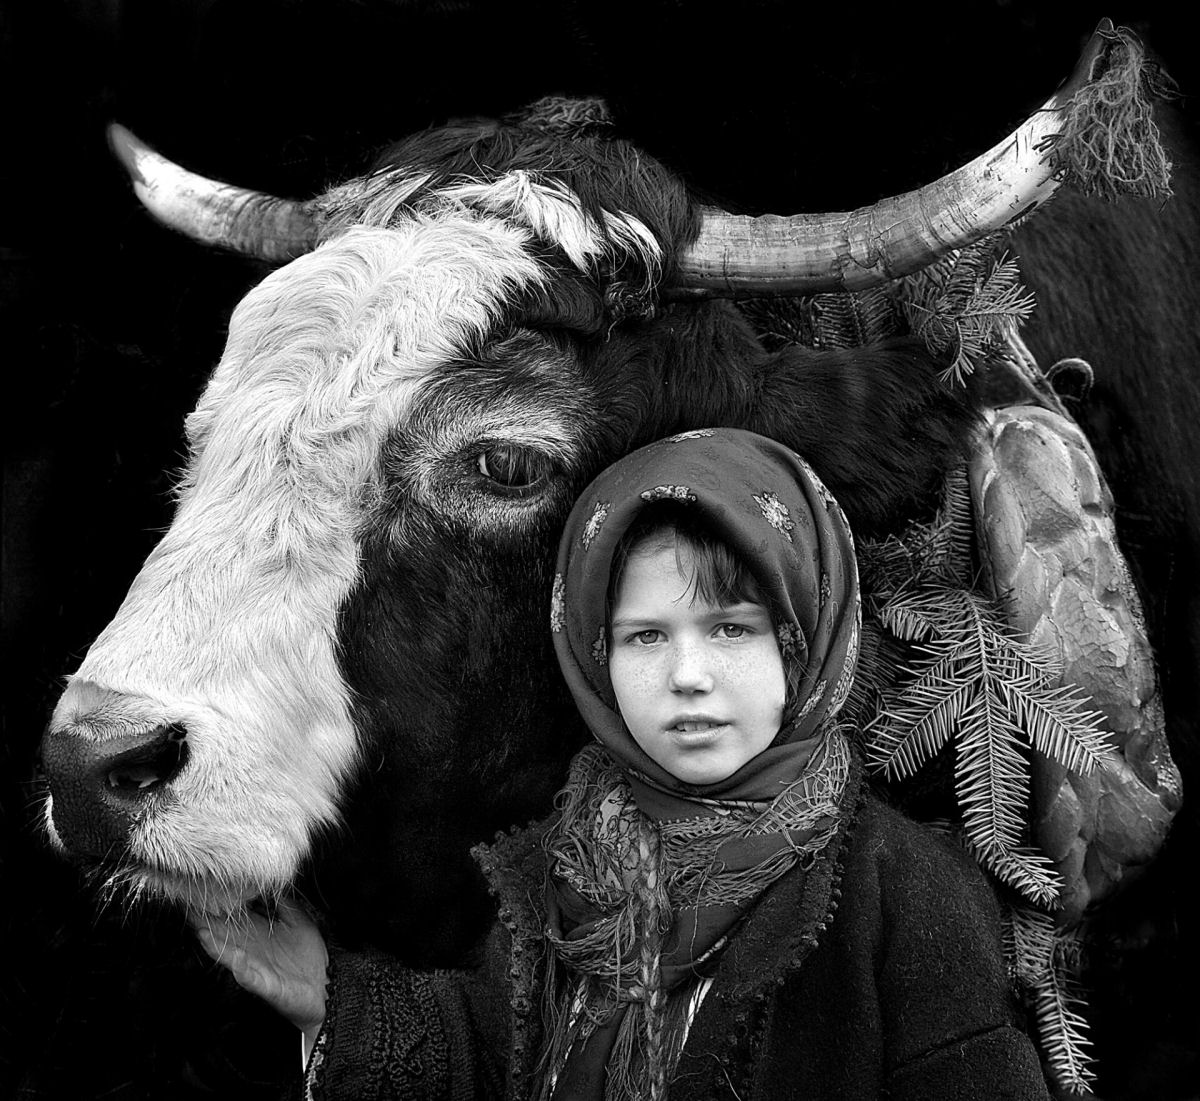 Retratos em P&B mostram os fortes laços entre pastores da Transilvânia e seus rebanhos 04